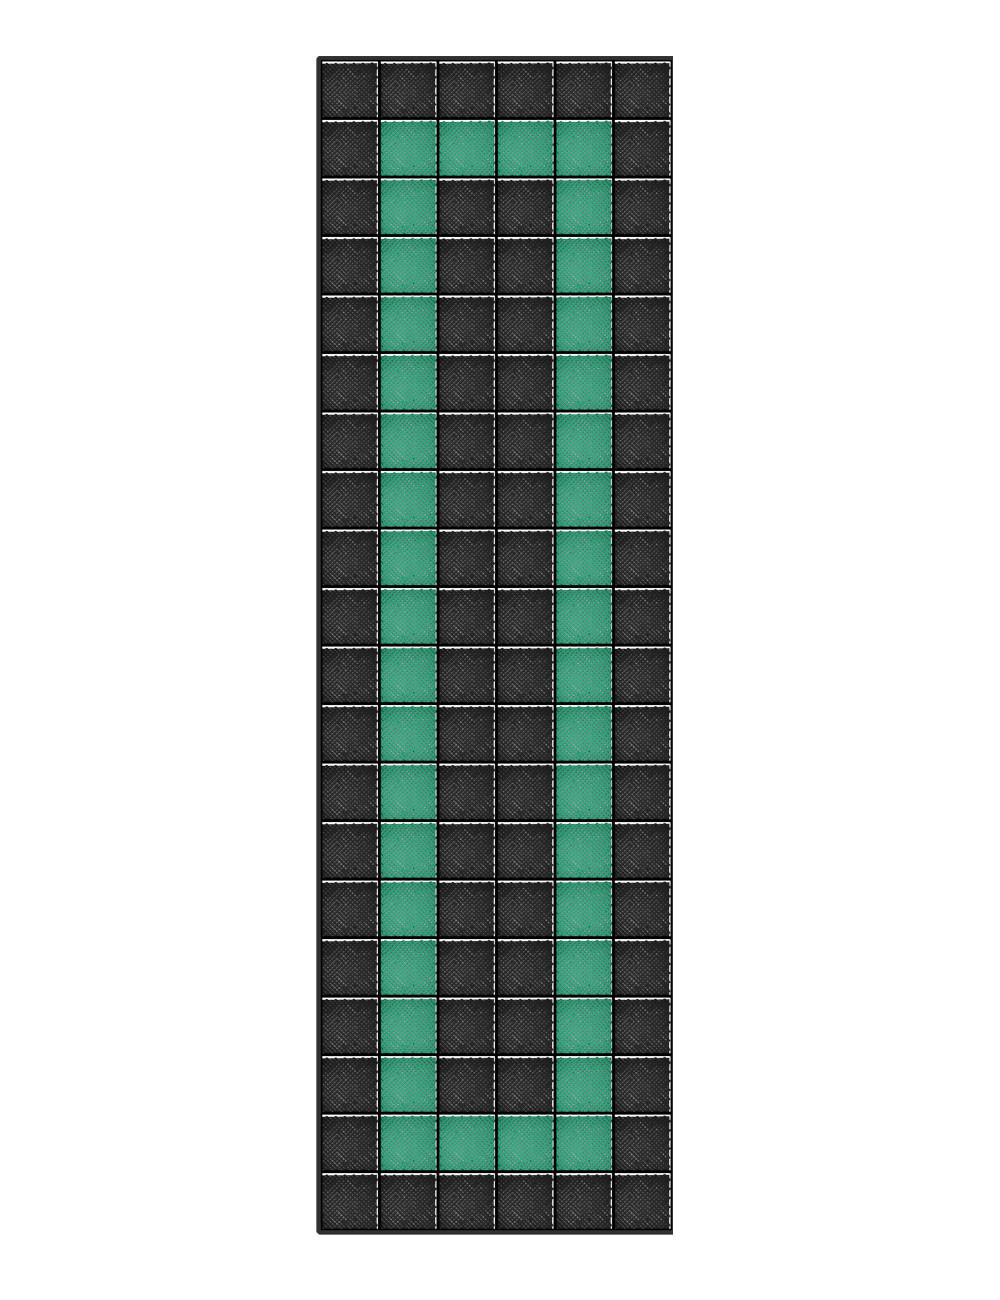 Kit dalles de sol motif racing pour garage - 30m² - 10 m x 3 m - Noir et vert